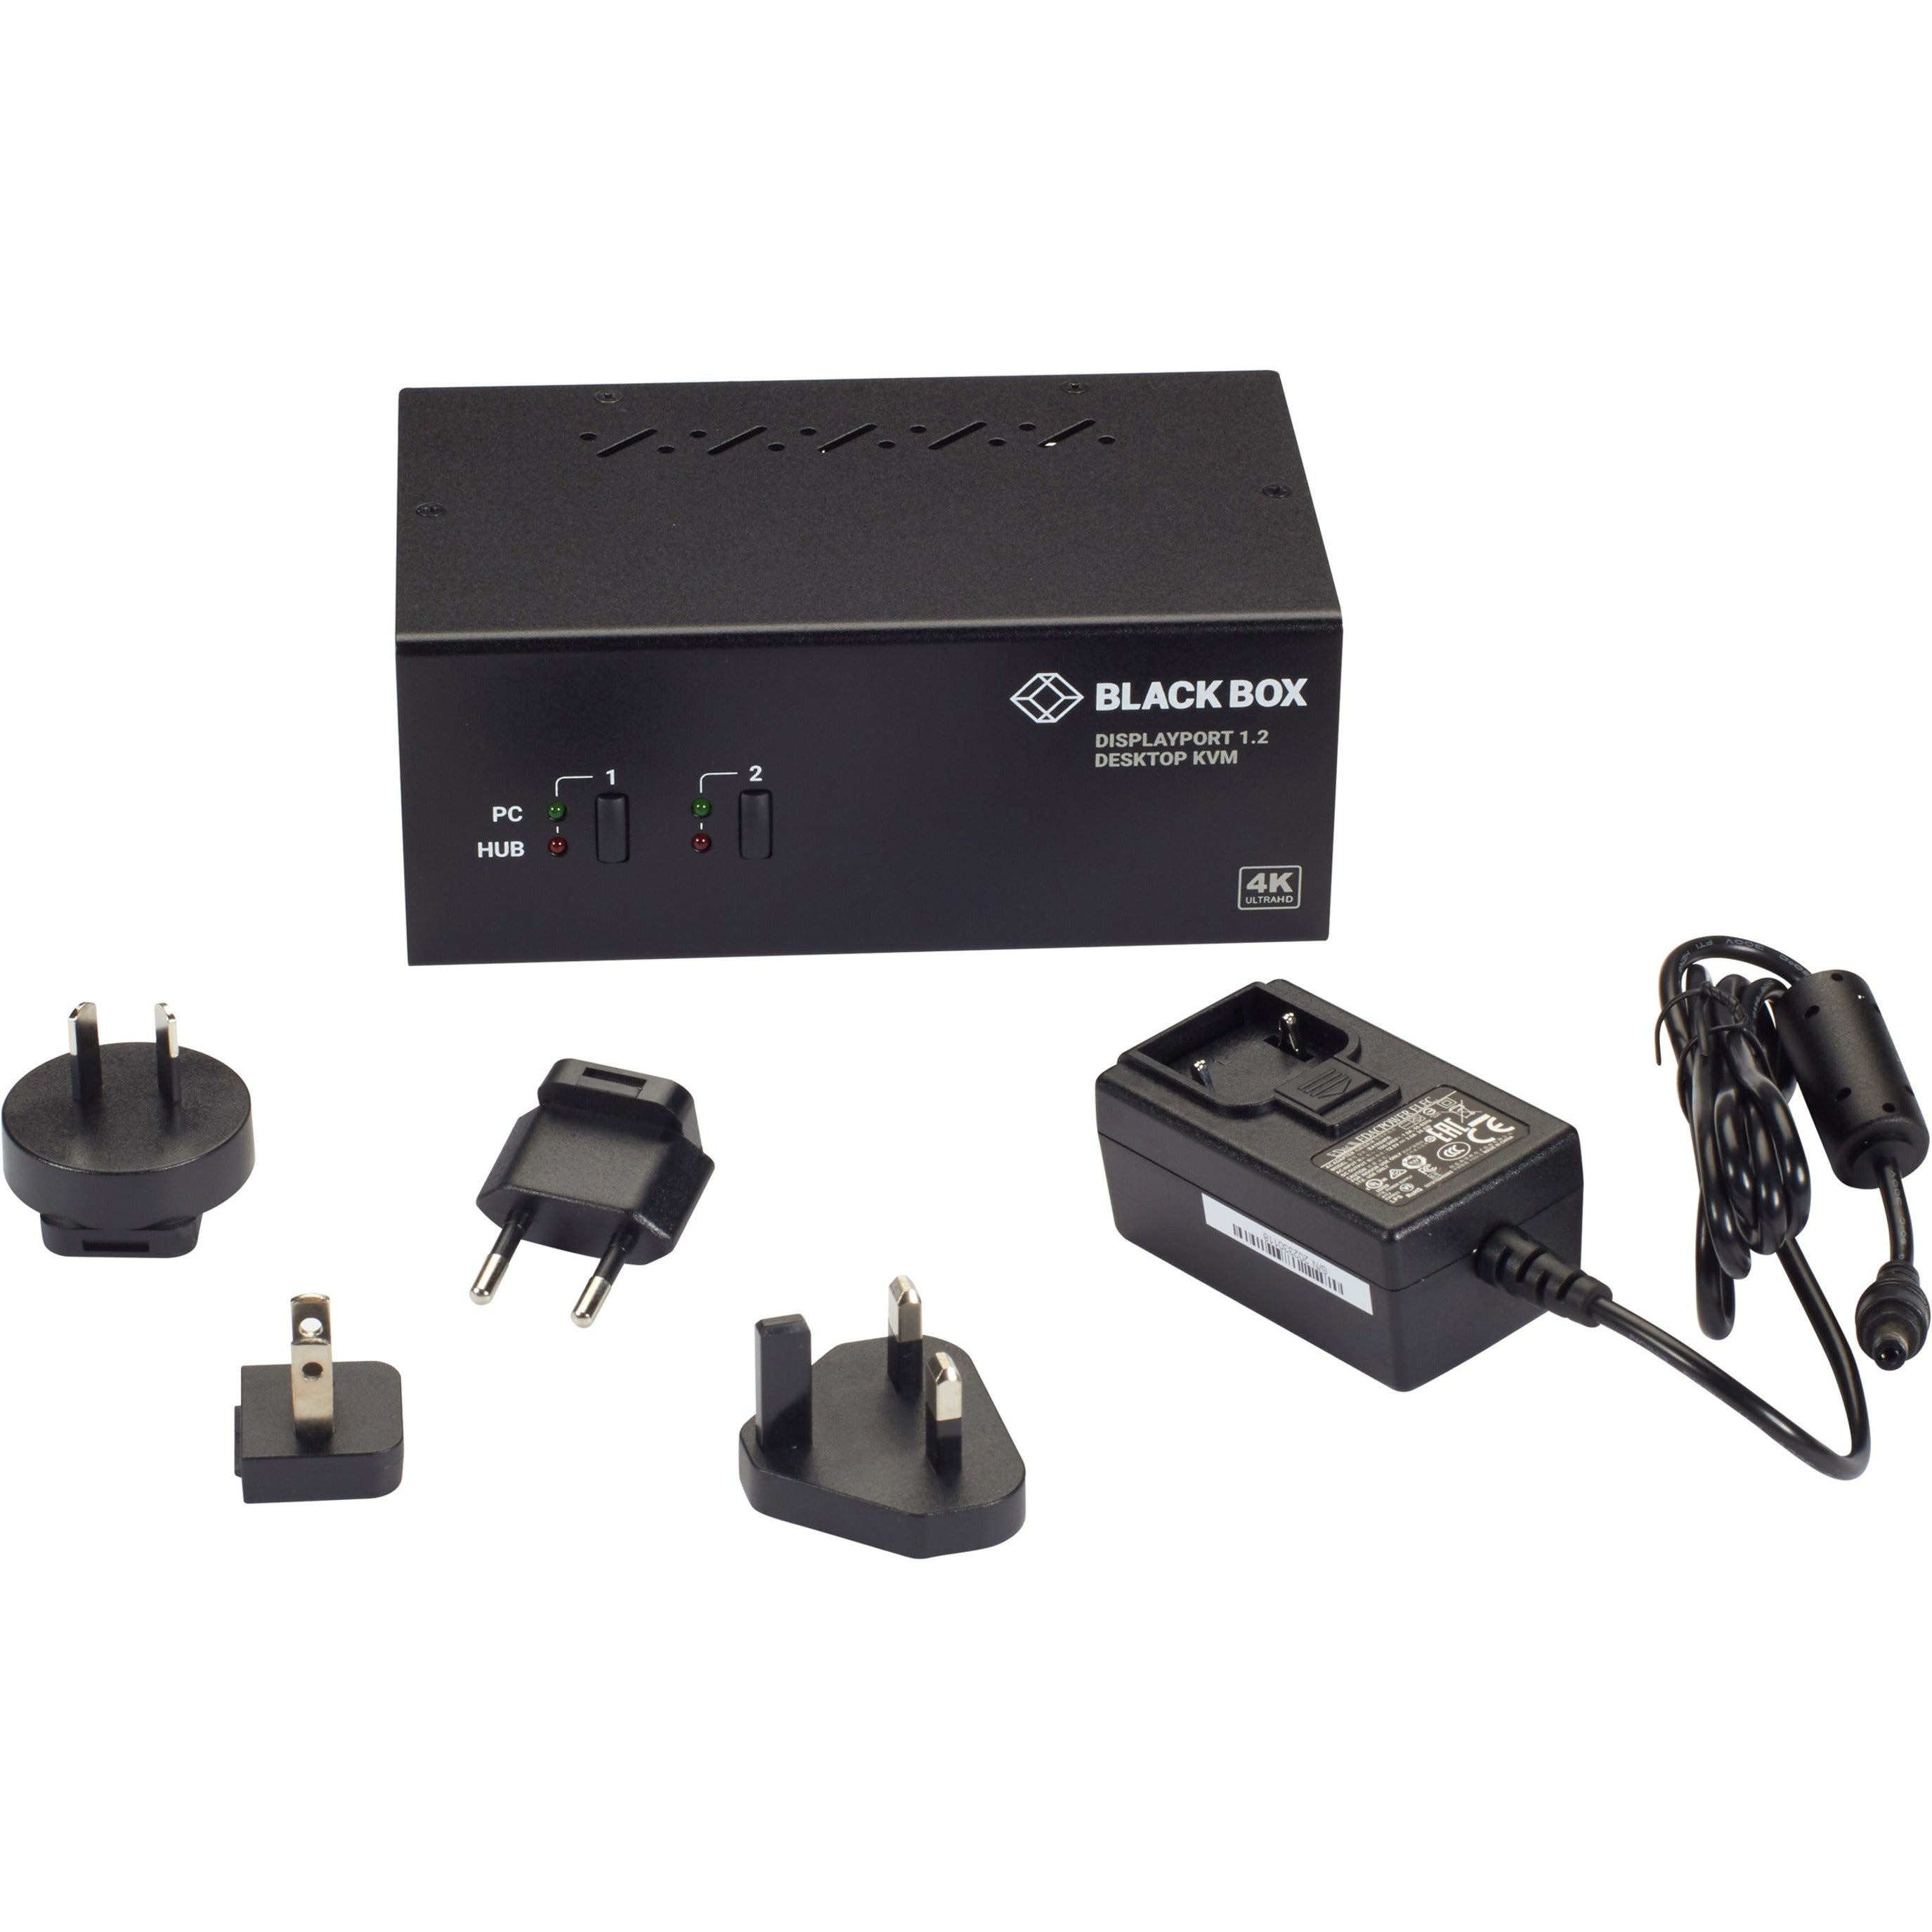 جهاز تبديل KVM Black Box KV6222DP - مراقبان مزدوجان، منفذ عرض 1.2، 4K 60Hz، محور USB 3.0، صوت، مشاركة جهازي كمبيوتر مع شاشتين 4K  العلامة التجارية: Black Box